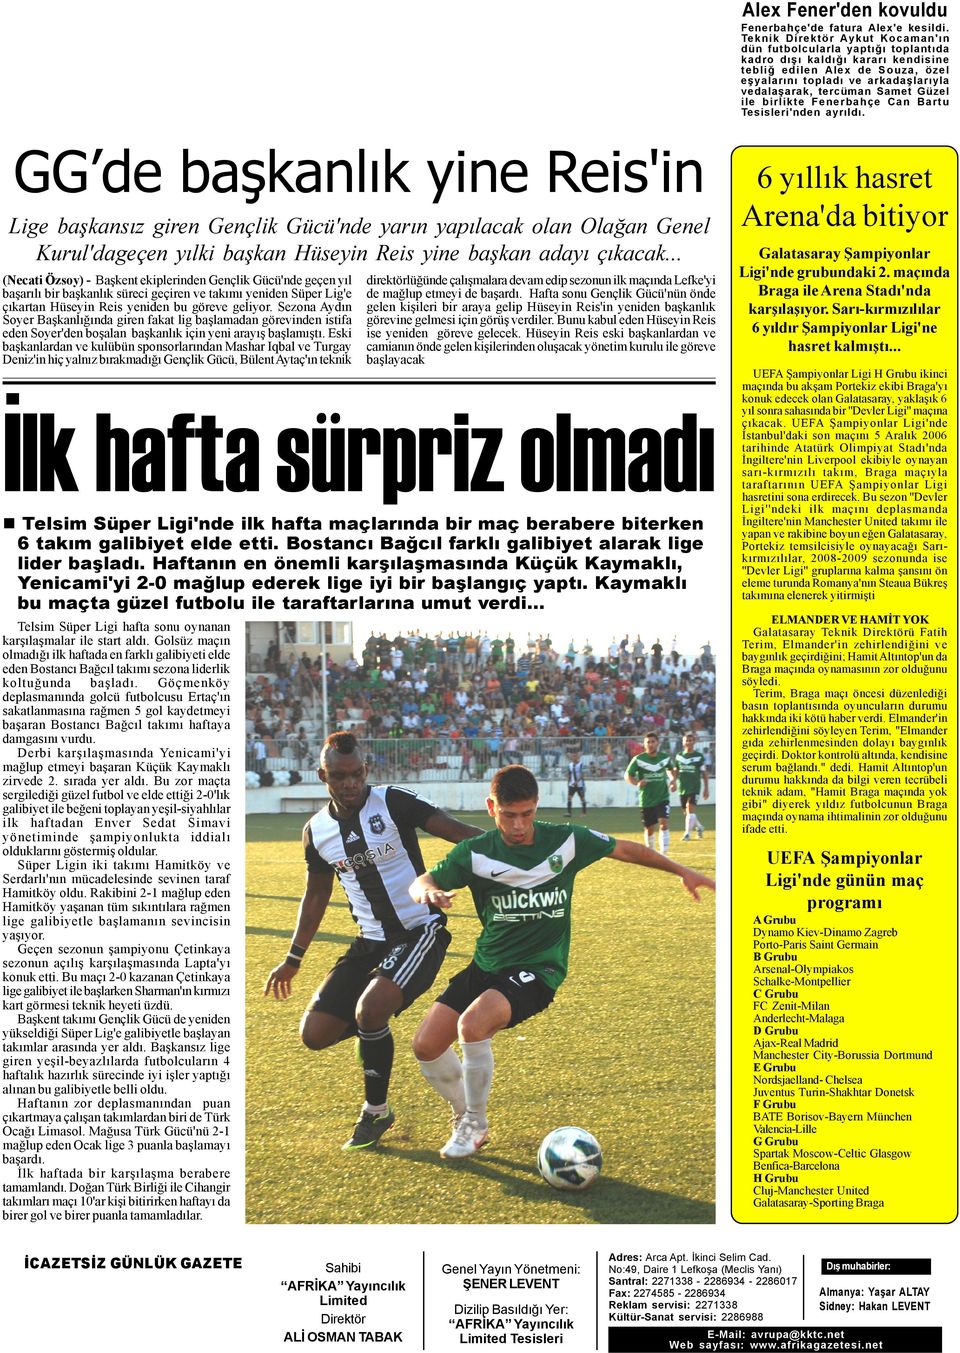 Samet Güzel ile birlikte Fenerbahçe Can Bartu Tesisleri'nden ayrýldý.